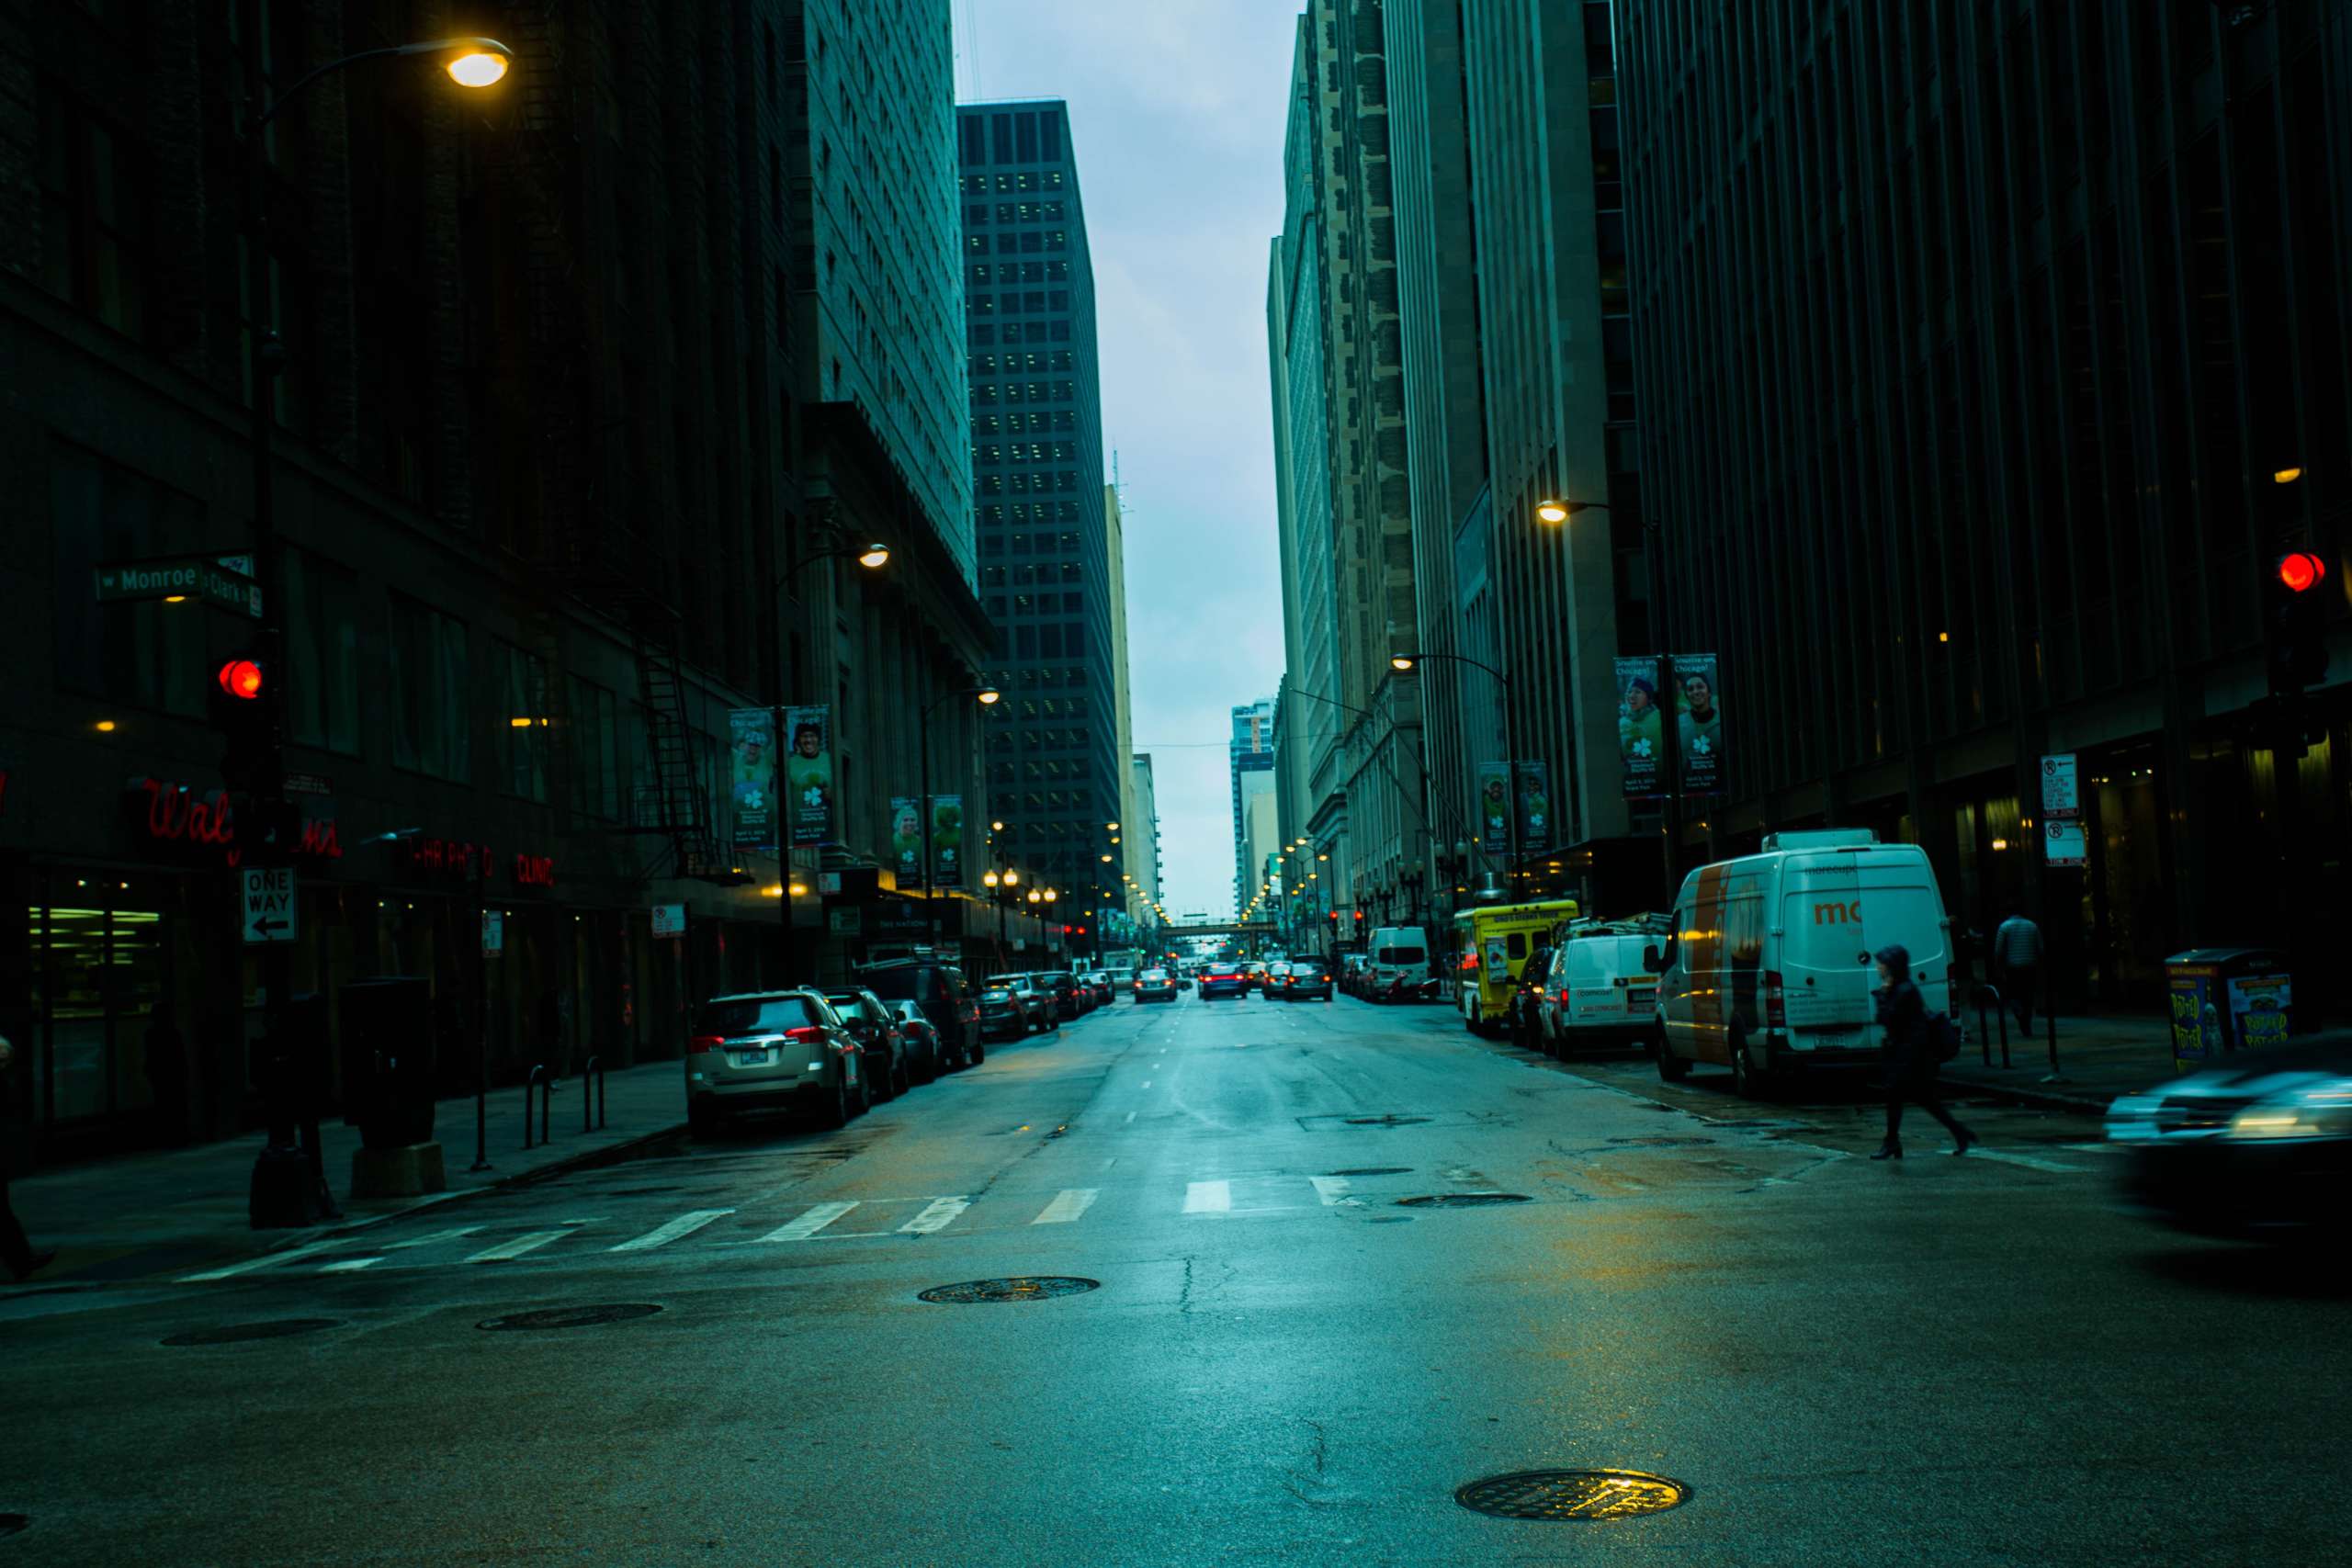 Rainy street at dusk.